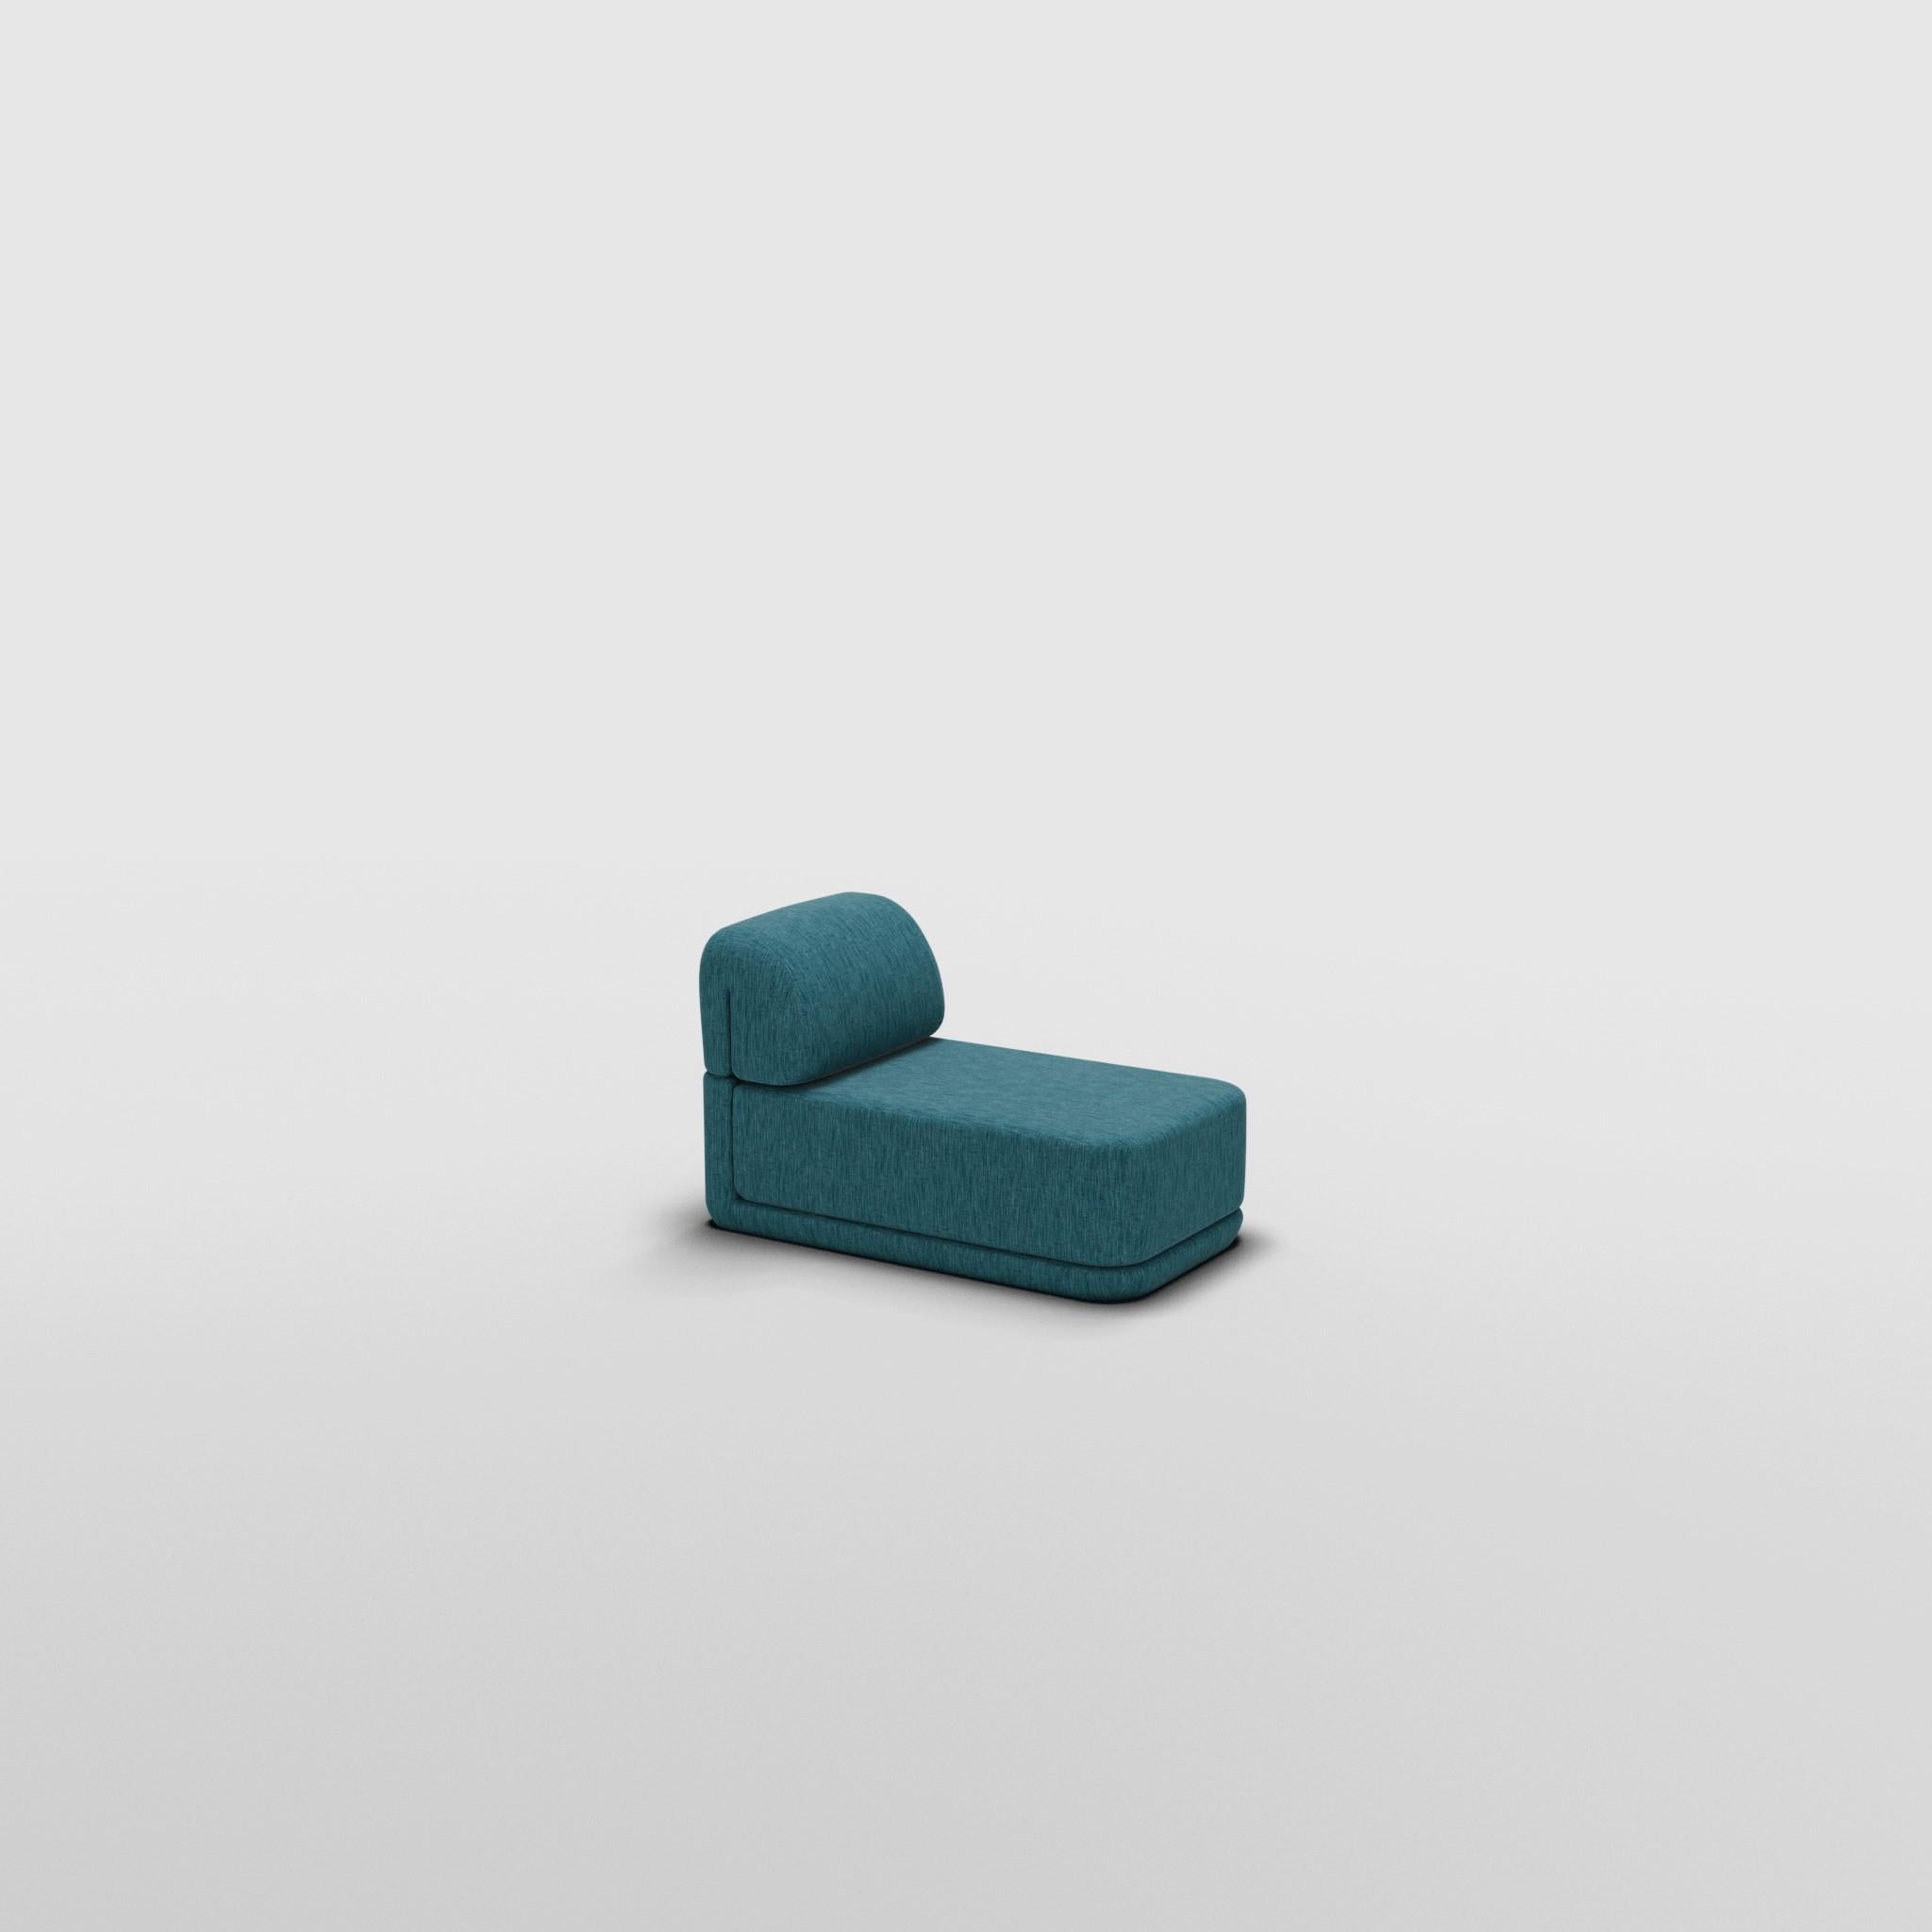 Slim Cube Lounge - Inspiré par les meubles de luxe italiens des années 70

Découvrez le canapé Cube, où l'art rencontre l'adaptabilité. Son design sculptural et son confort personnalisable créent des possibilités infinies pour votre espace de vie.